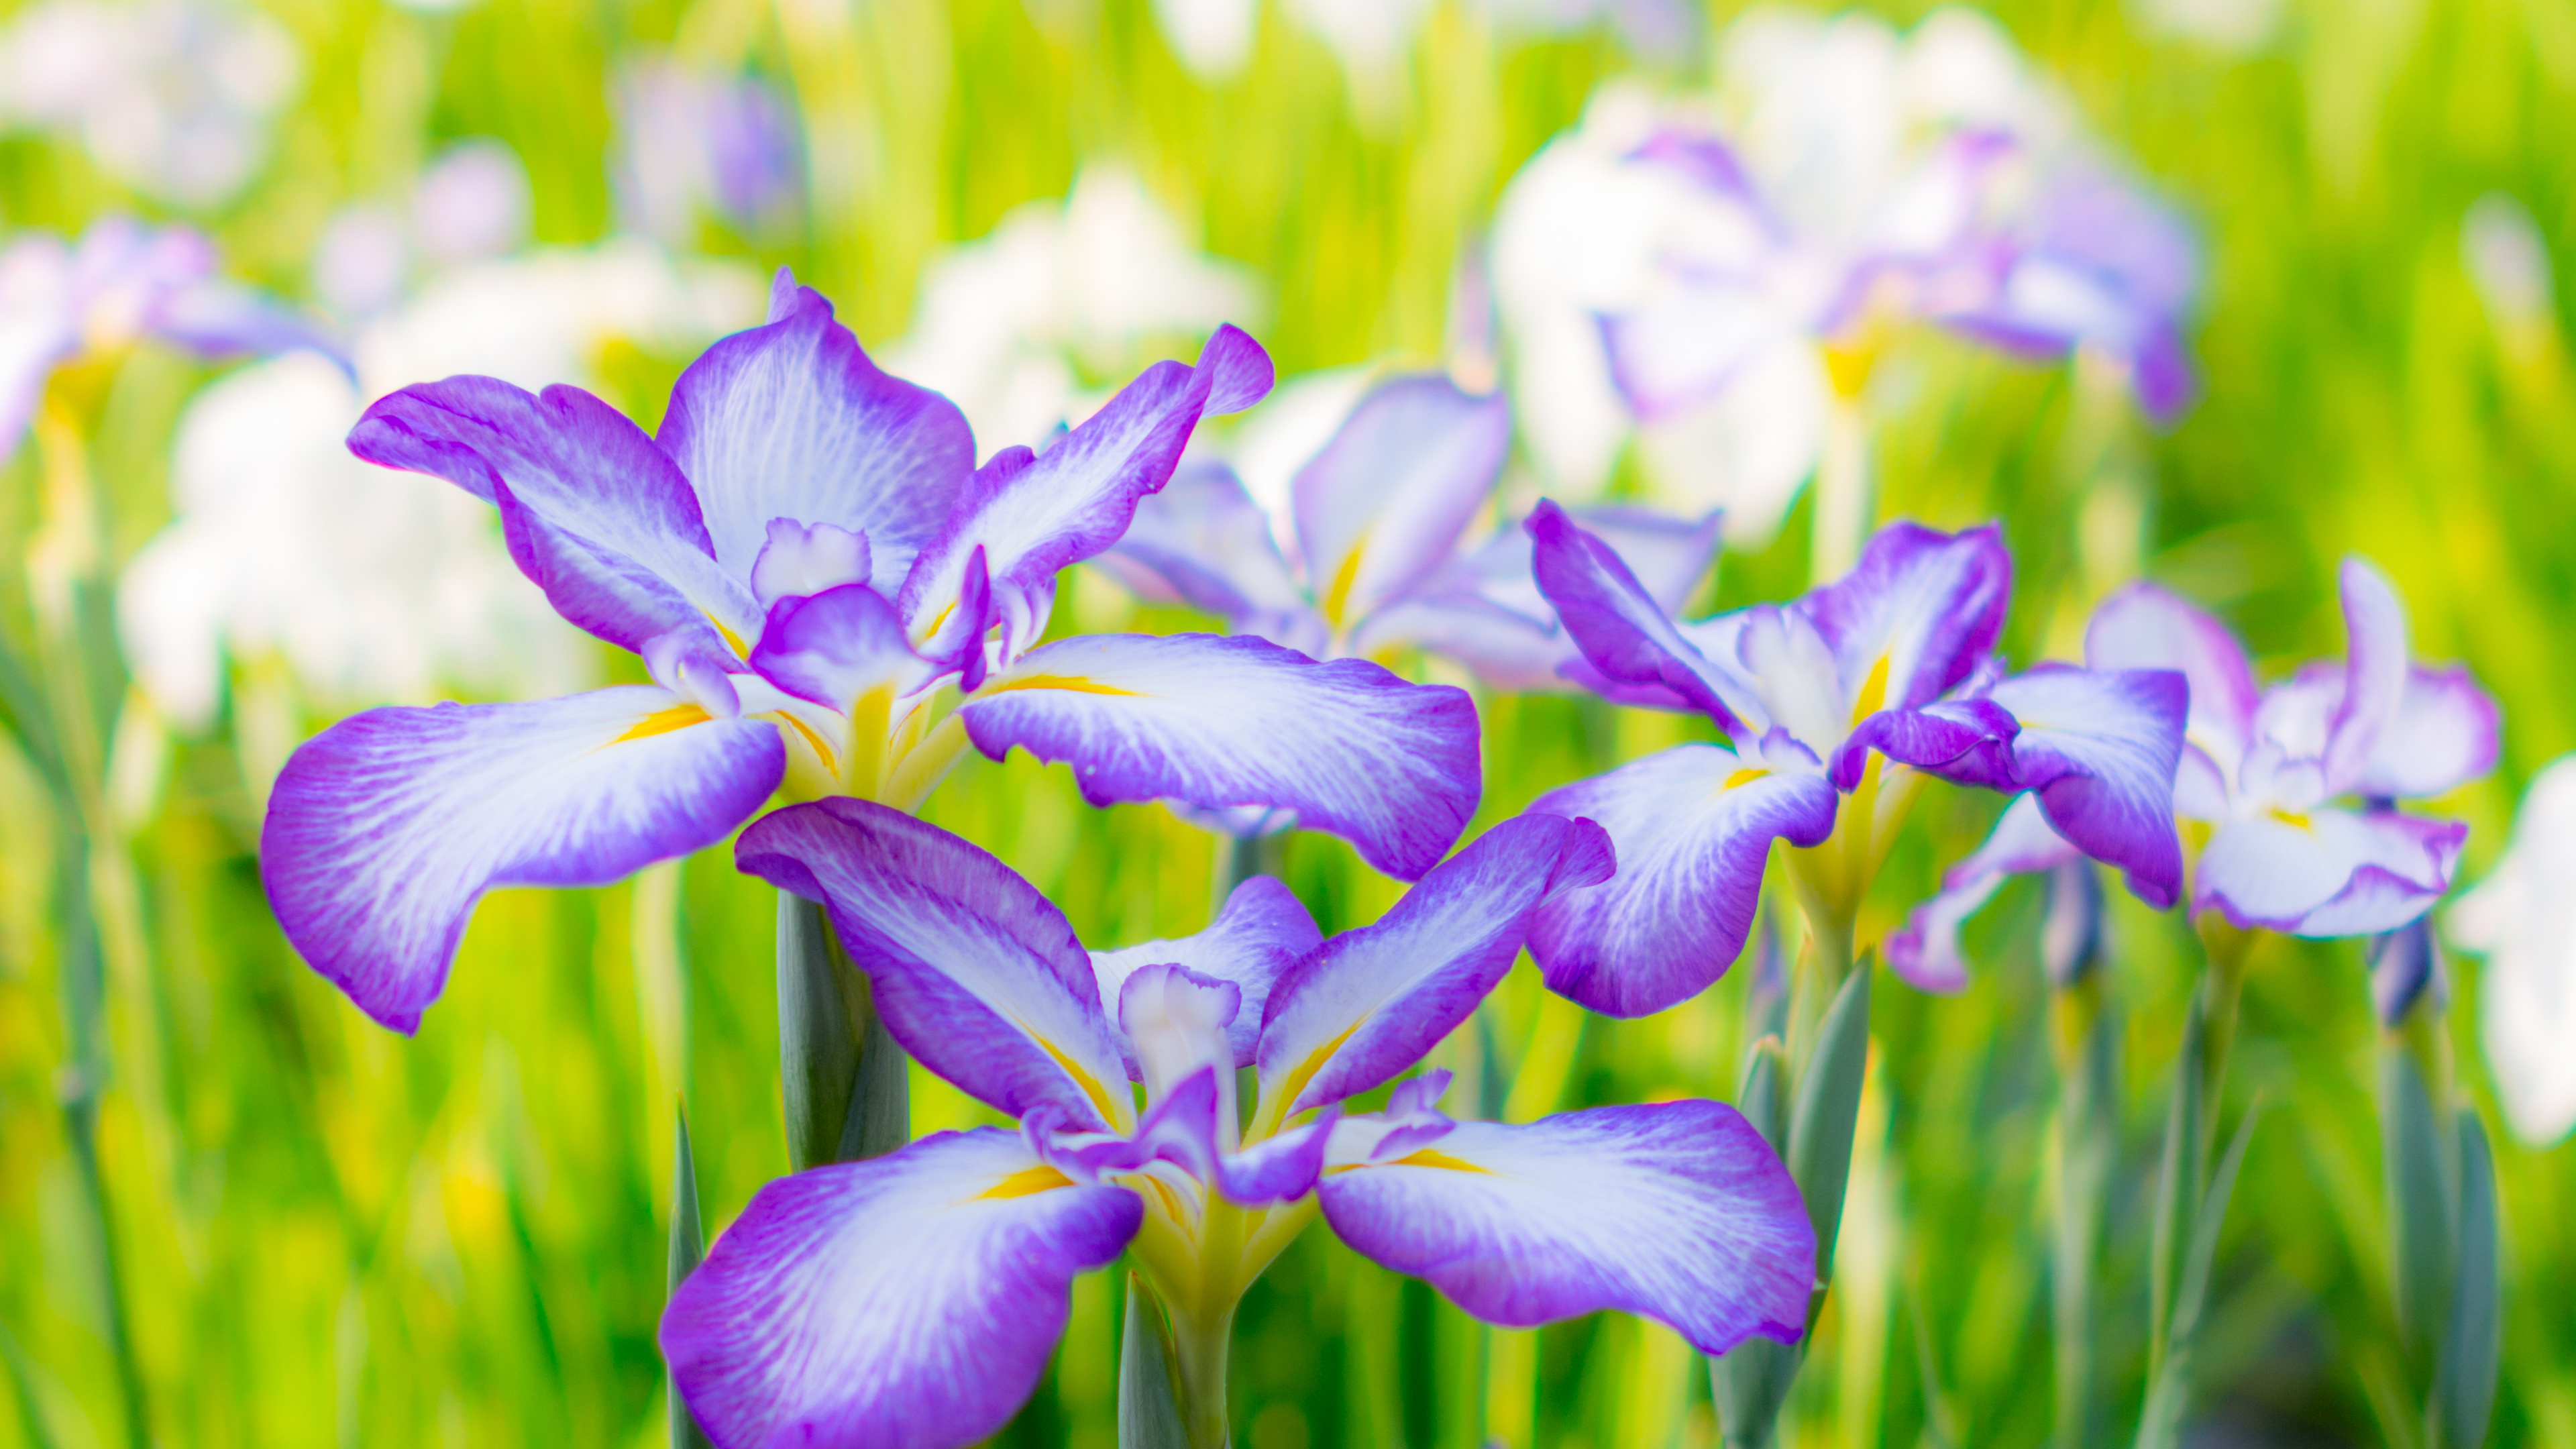 Purple and White Flowers in Tilt Shift Lens. Wallpaper in 3840x2160 Resolution